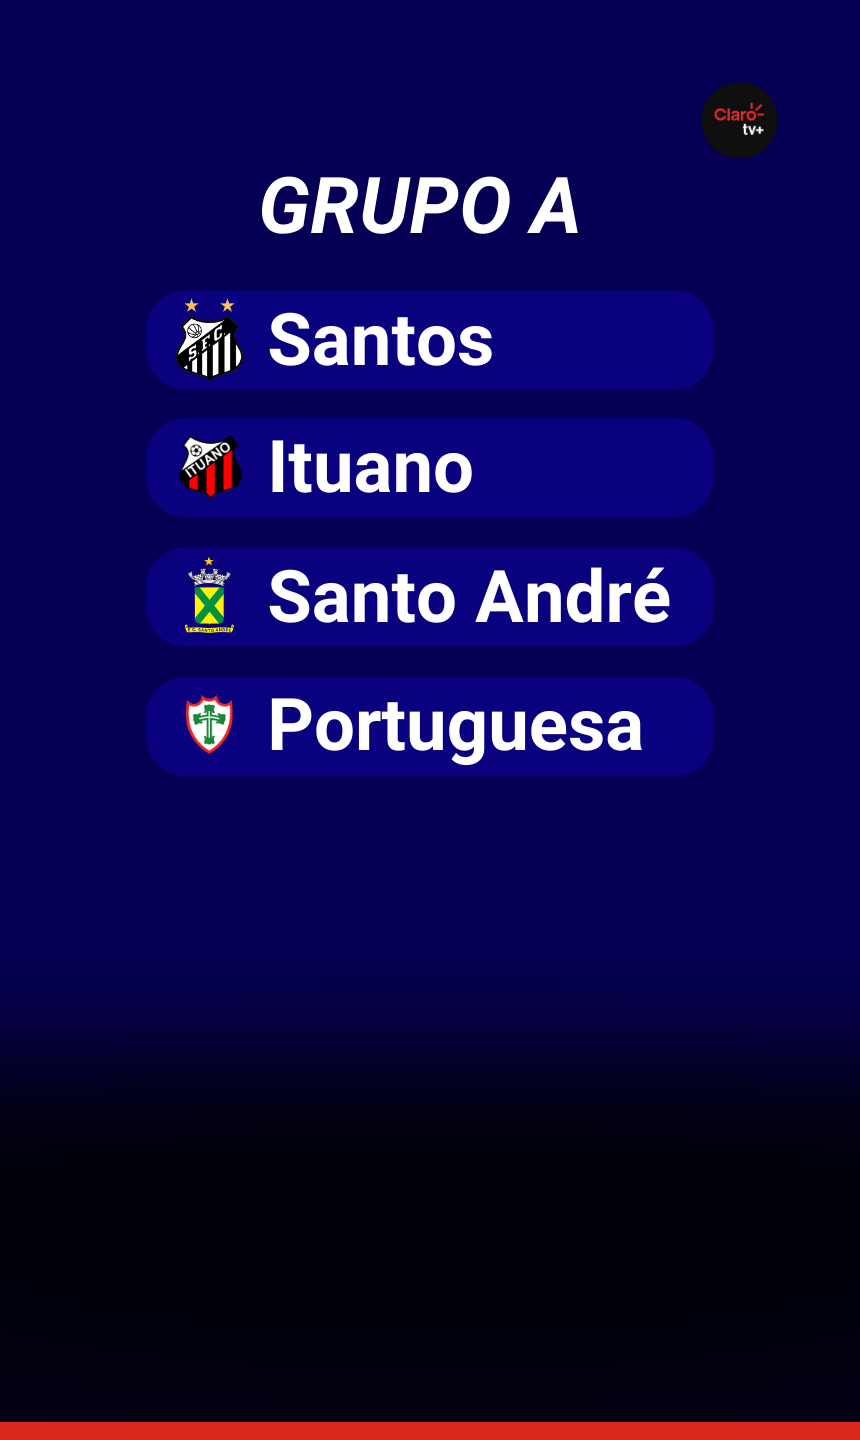 Conheça os grupos do Campeonato Paulista 2024